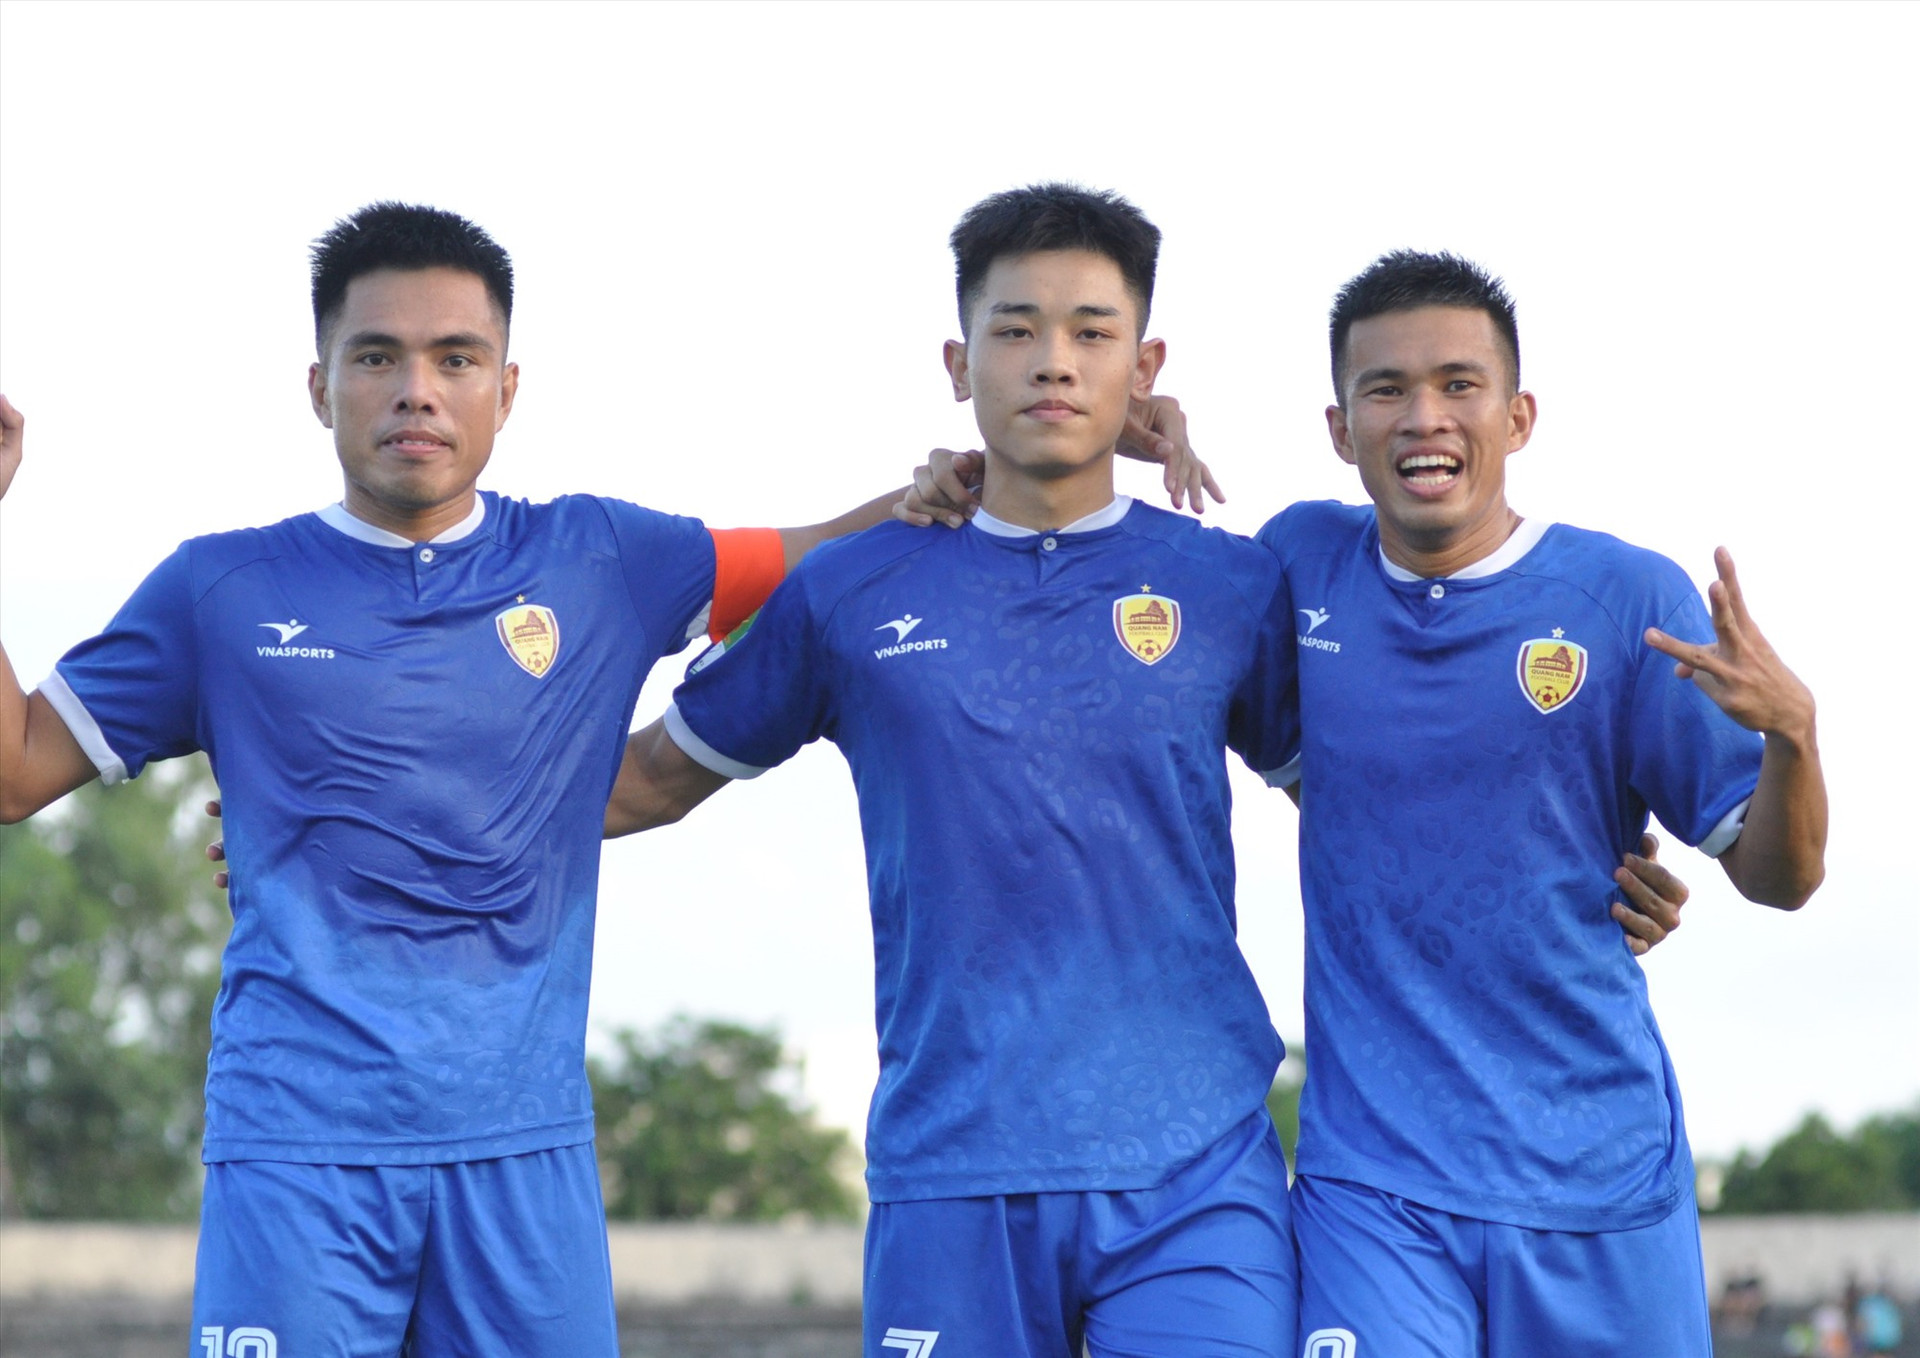 Đình Bắc (giữa) ghi 4 bàn thắng trong chiến thắng 7-1 của Quảng Nam trước Bình Thuận. Ảnh: A.S